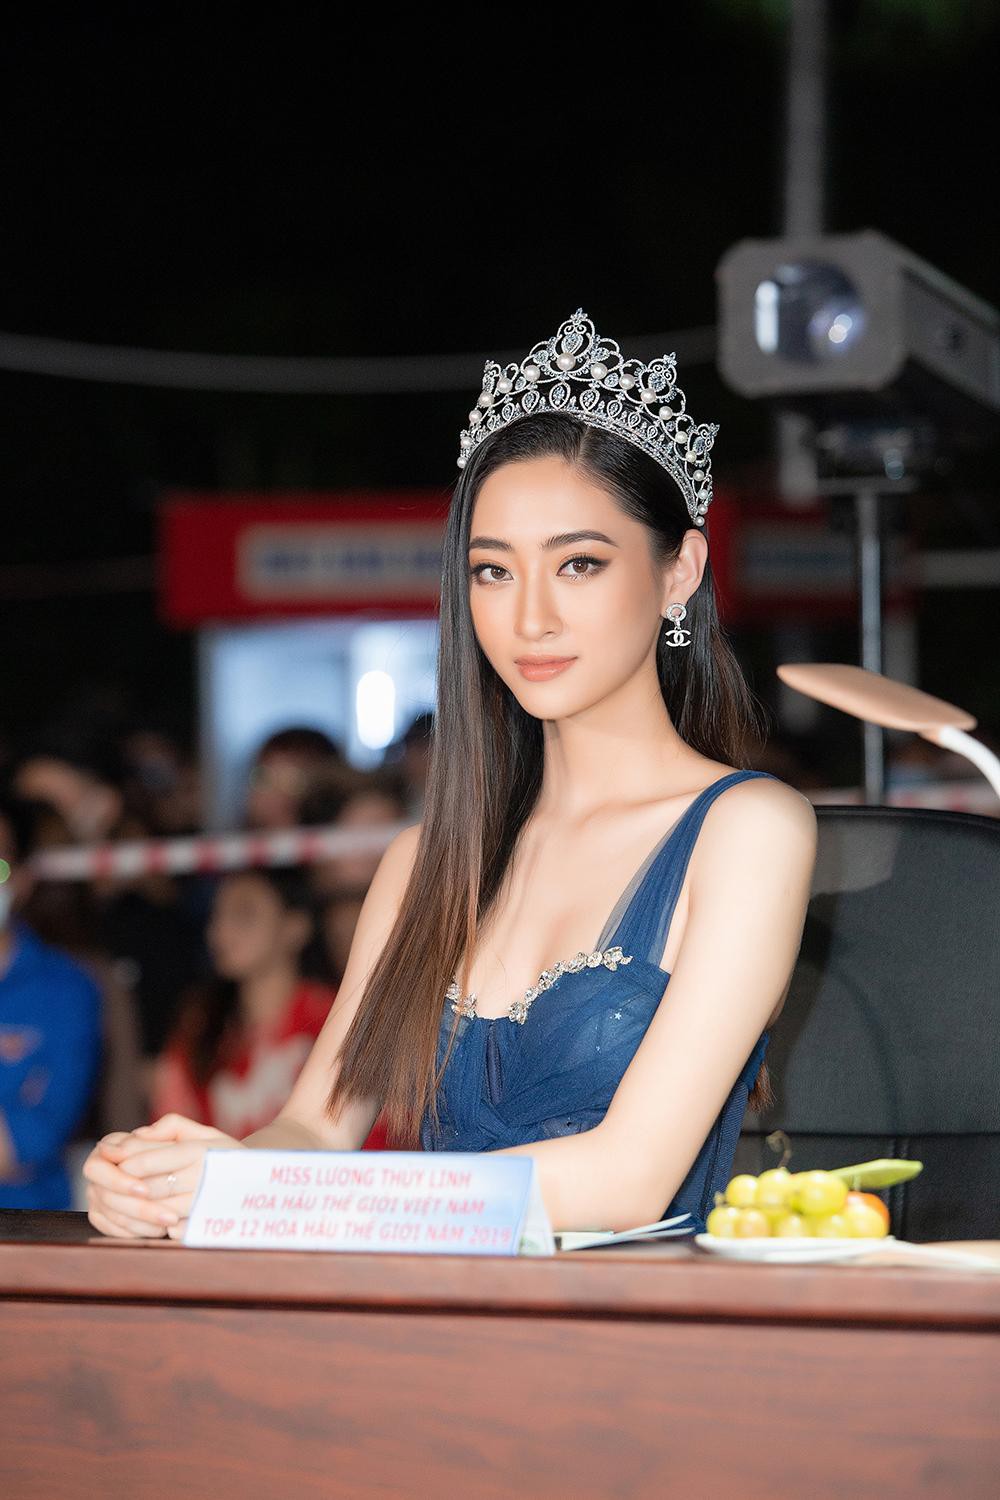 Hoa hậu Lương Thuỳ Linh đội vương miện 3 tỷ đồng, diện đầm xanh xẻ cao kheo chân dài 1,22m quyến rũ - Ảnh 3.